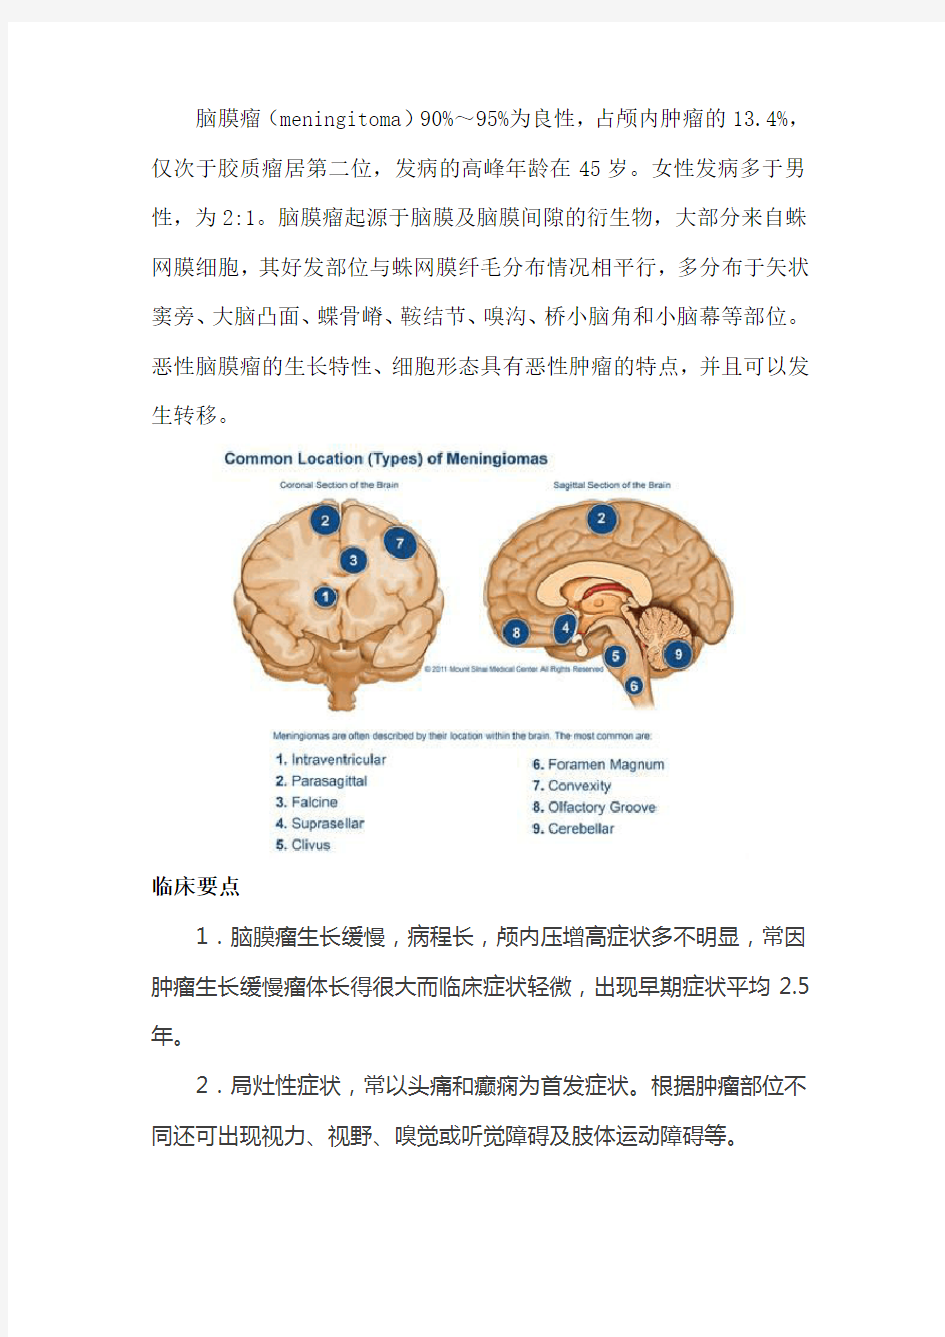 脑膜瘤病理分型及典型影像表现